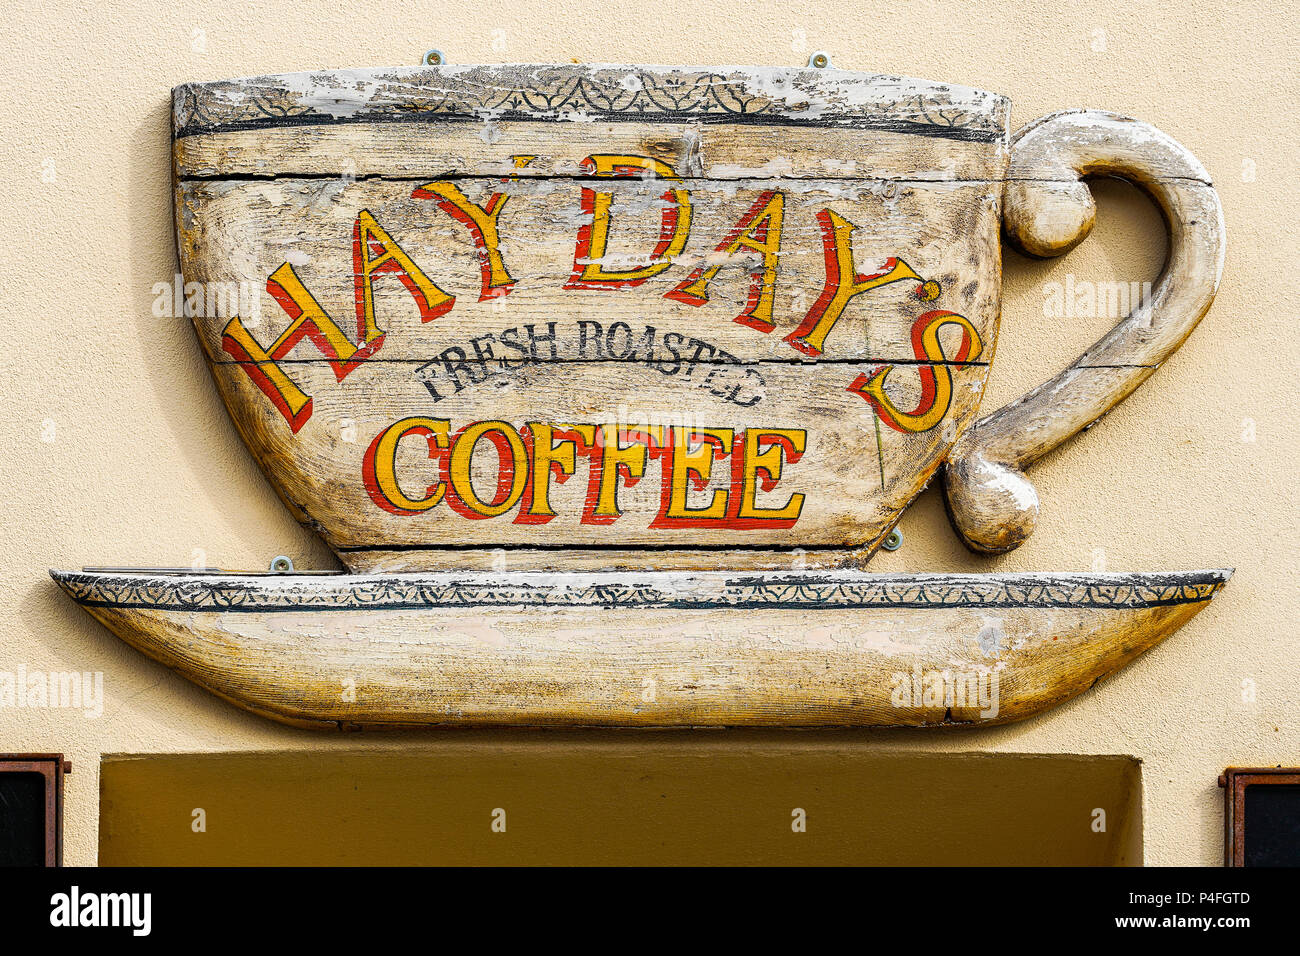 Gigantesca tazza di caffè sulla parete, Nyhavn (nuovo porto), fieno giornata di caffè tostato francese Foto Stock